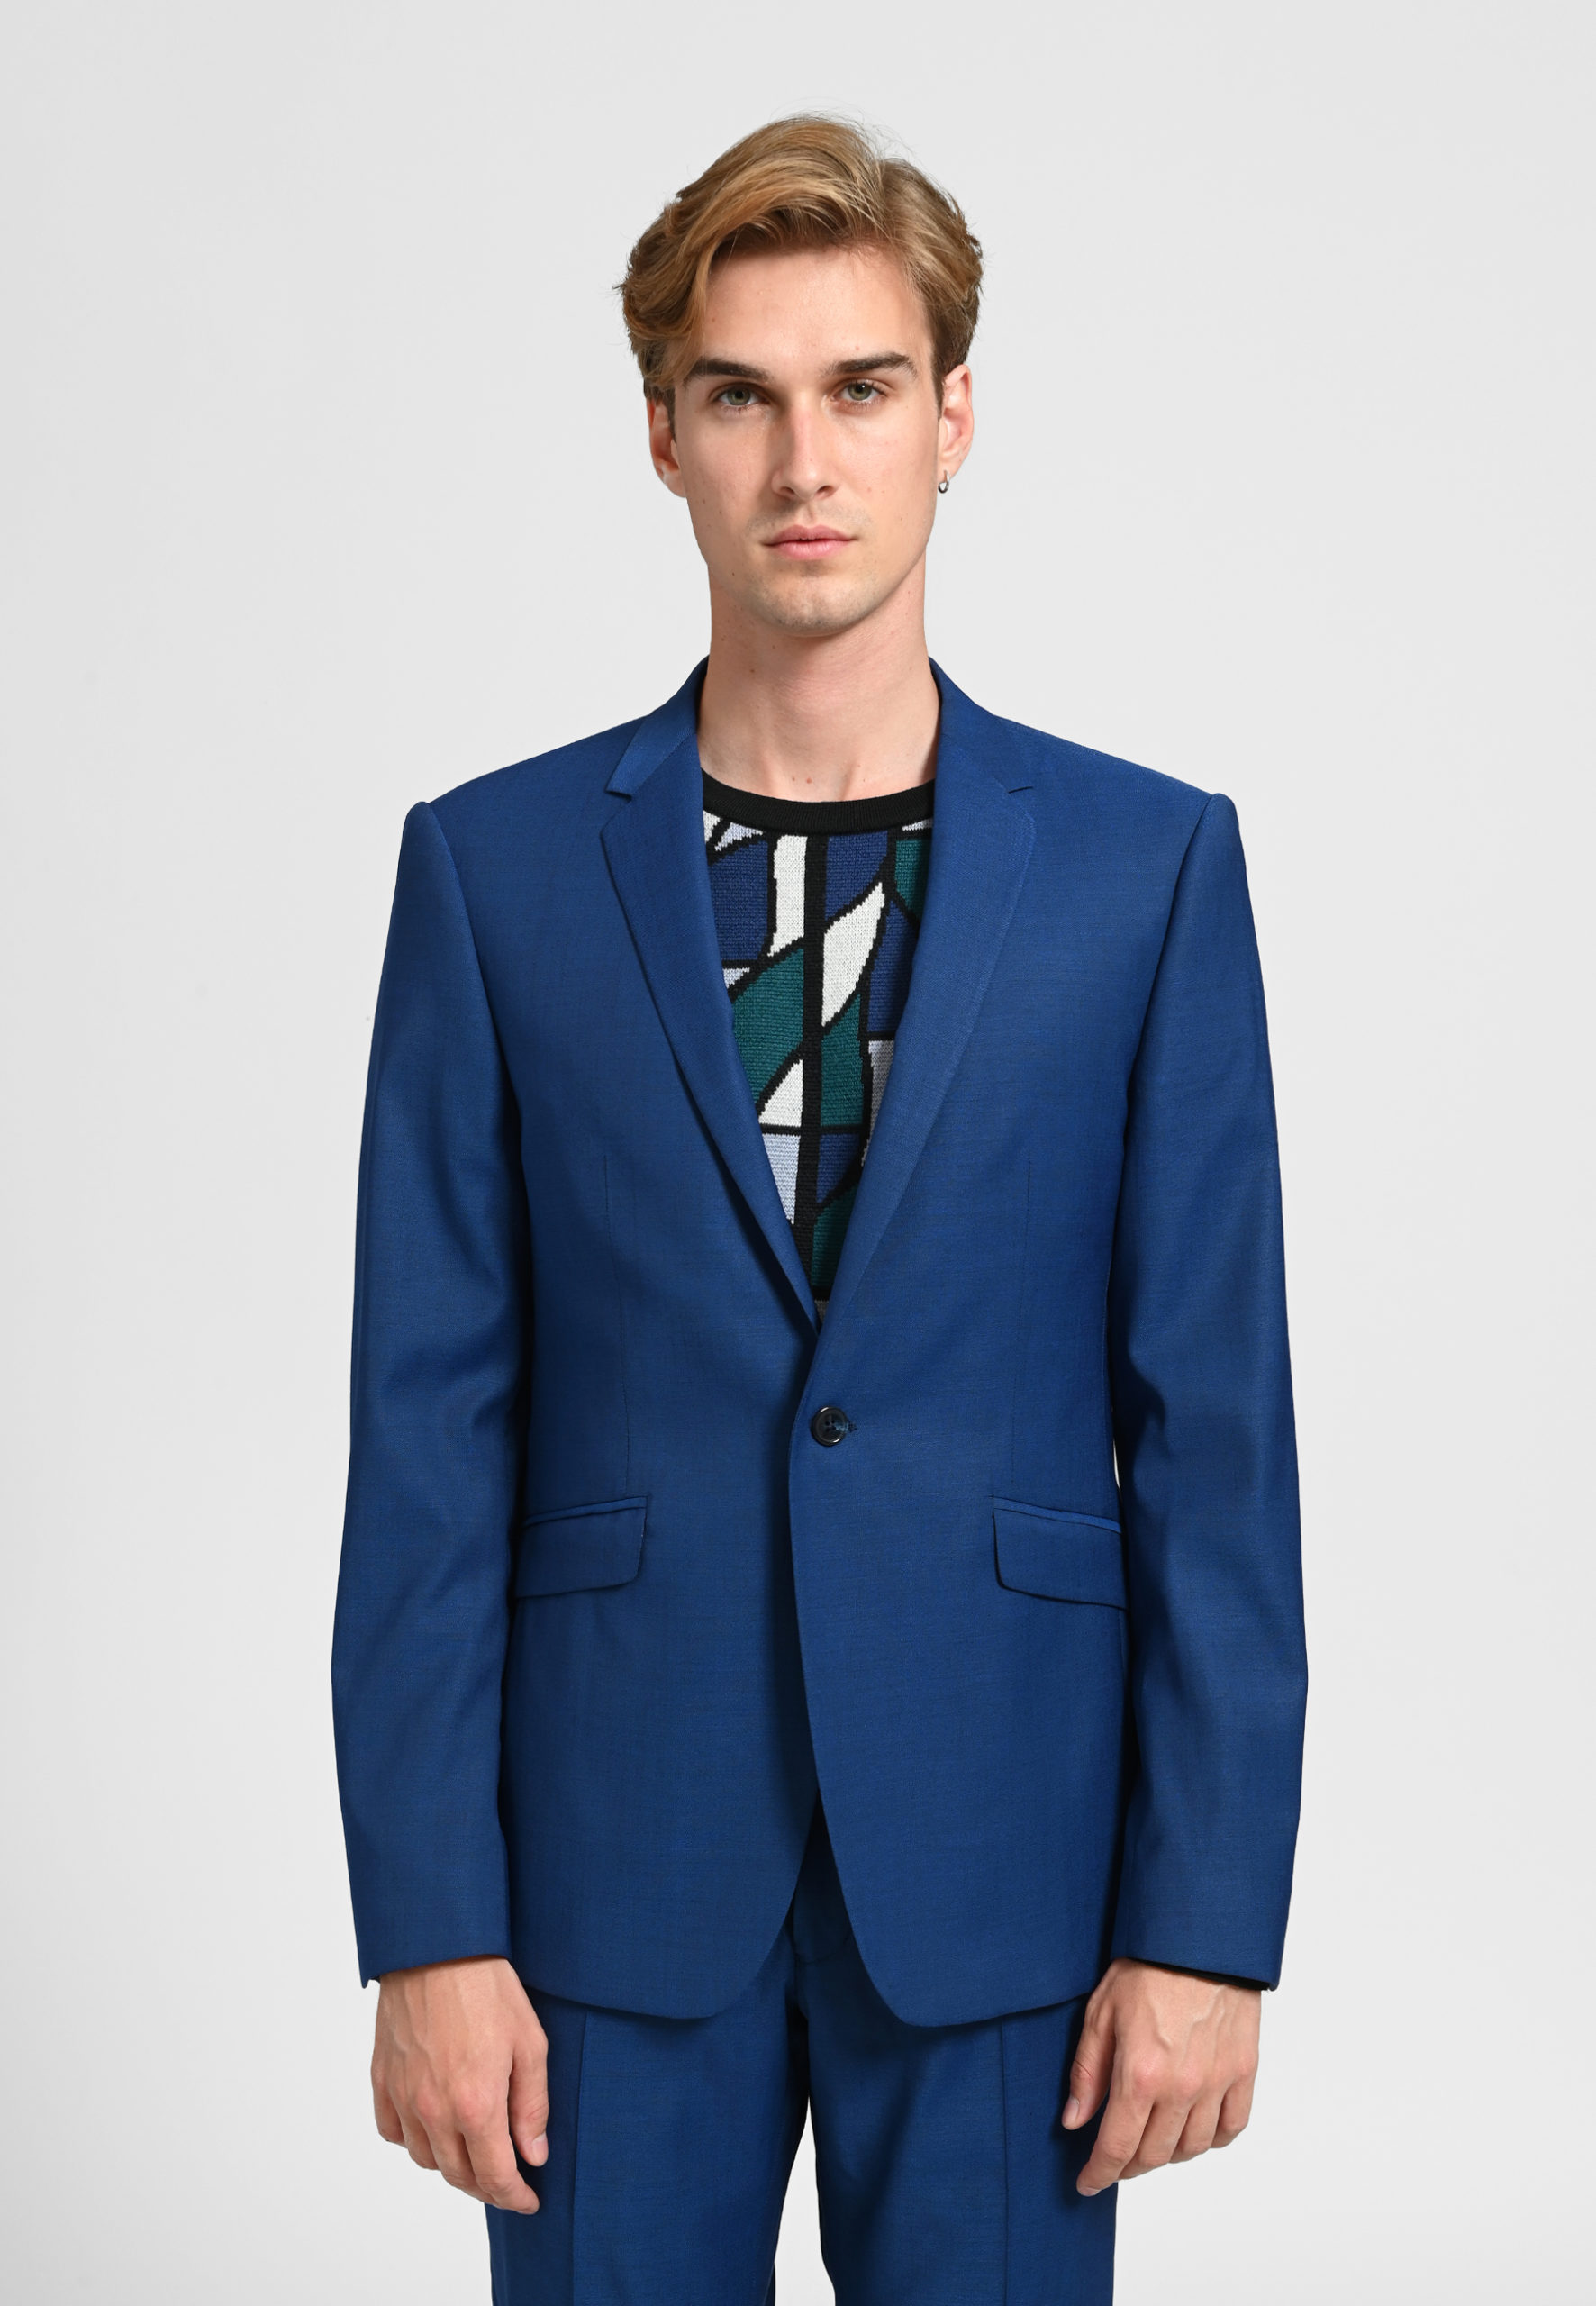 JA56709 Royal Blue Suits - Cobalt Blue Vested 3 Pieces Suit